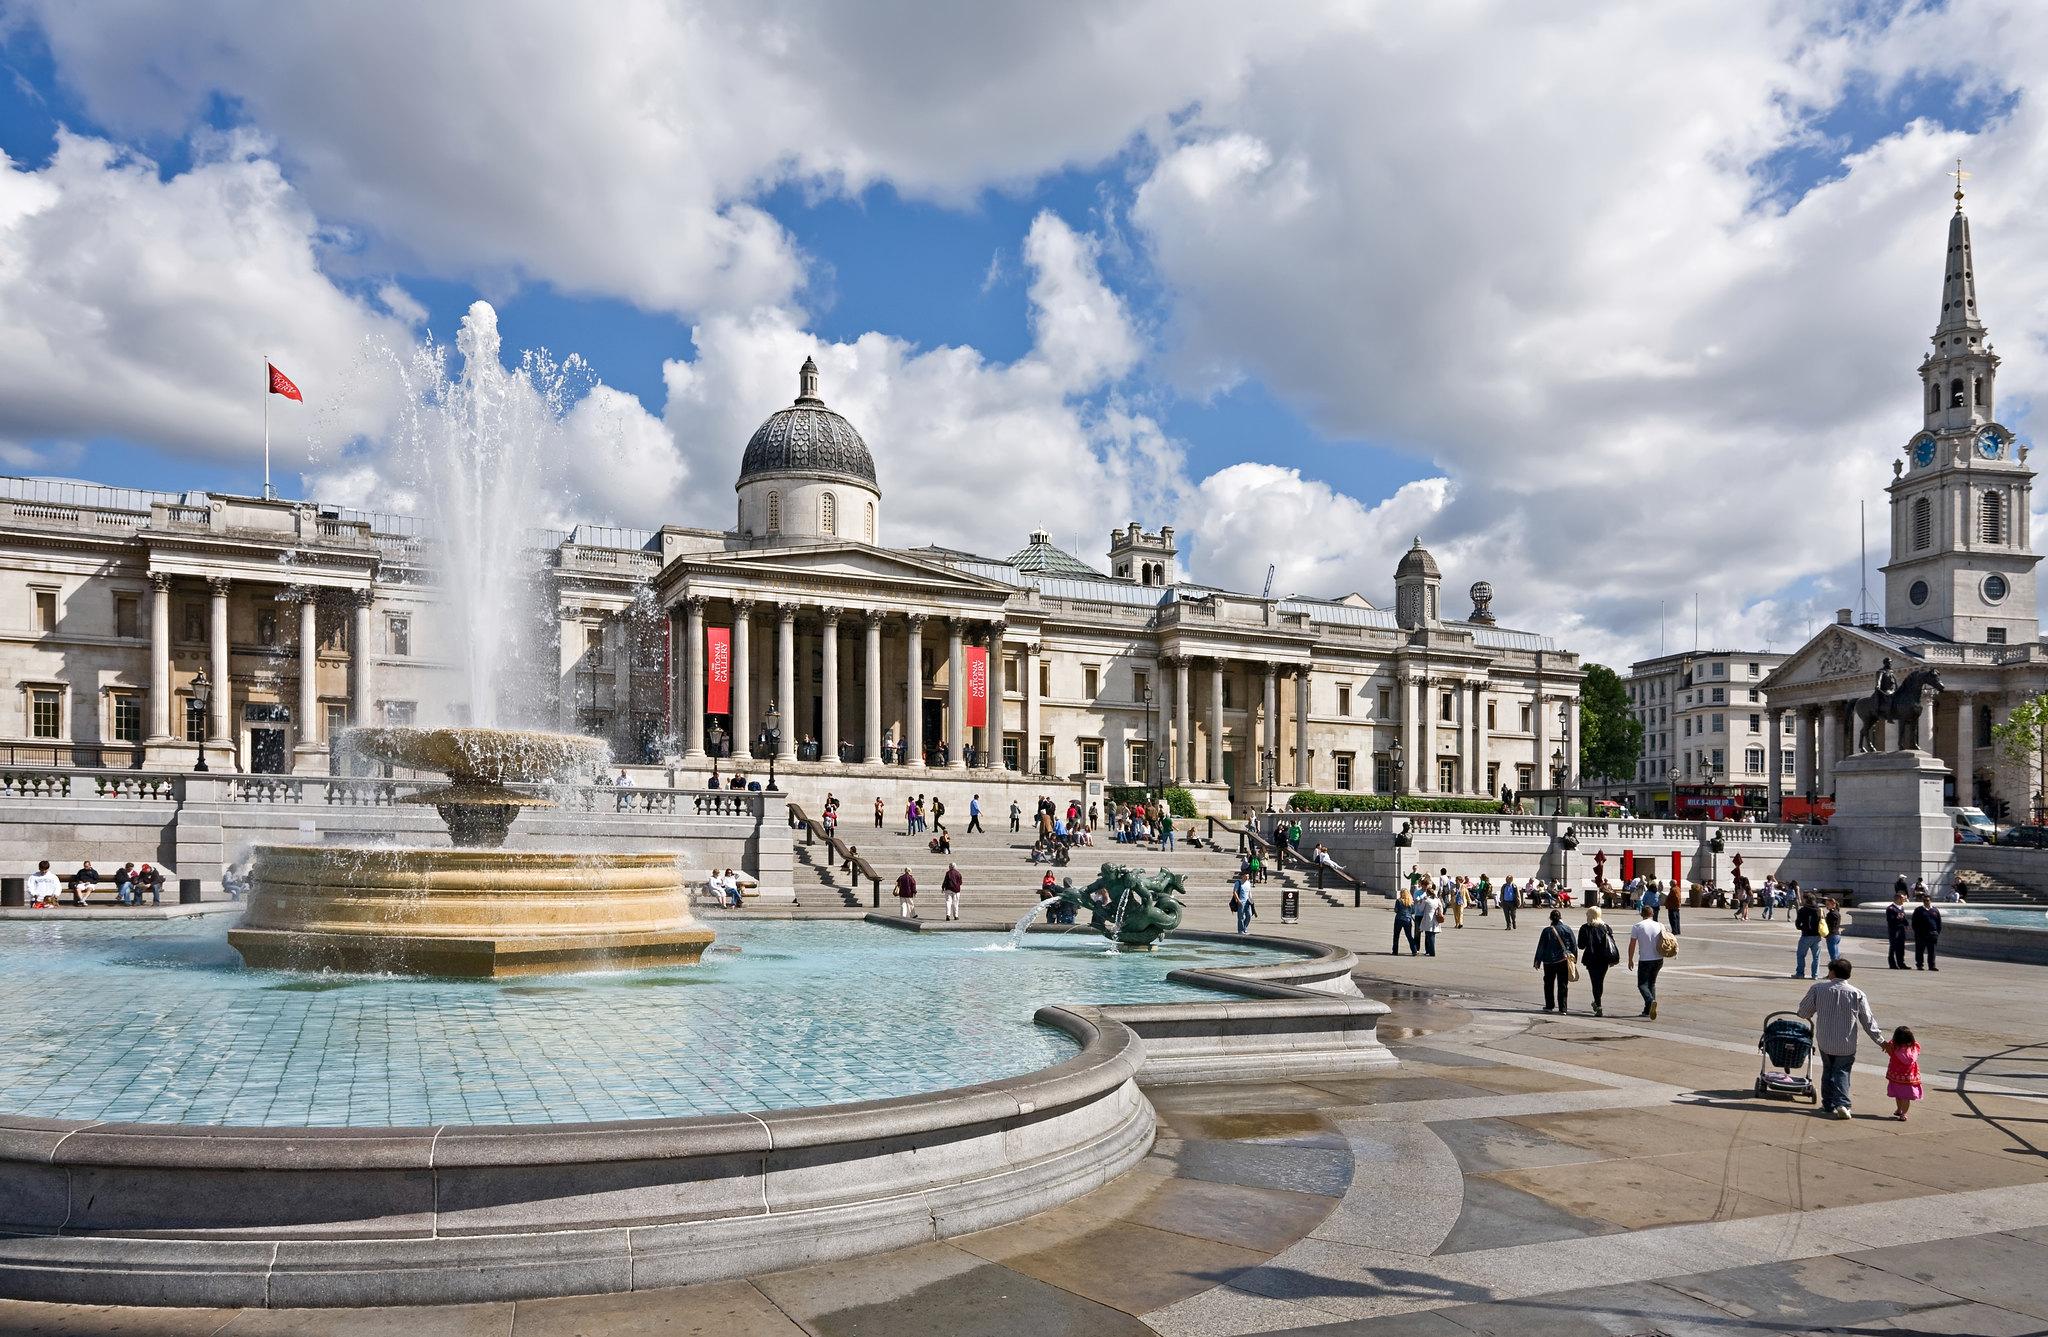 λονδινο αξιοθεατα μια φωτογραφία της πρωτεύουσας της Μεγάλης Βρετανίας με το Μπιγκ Μπέν και το Μάτι του λονδινου να ξεχωρίζουν